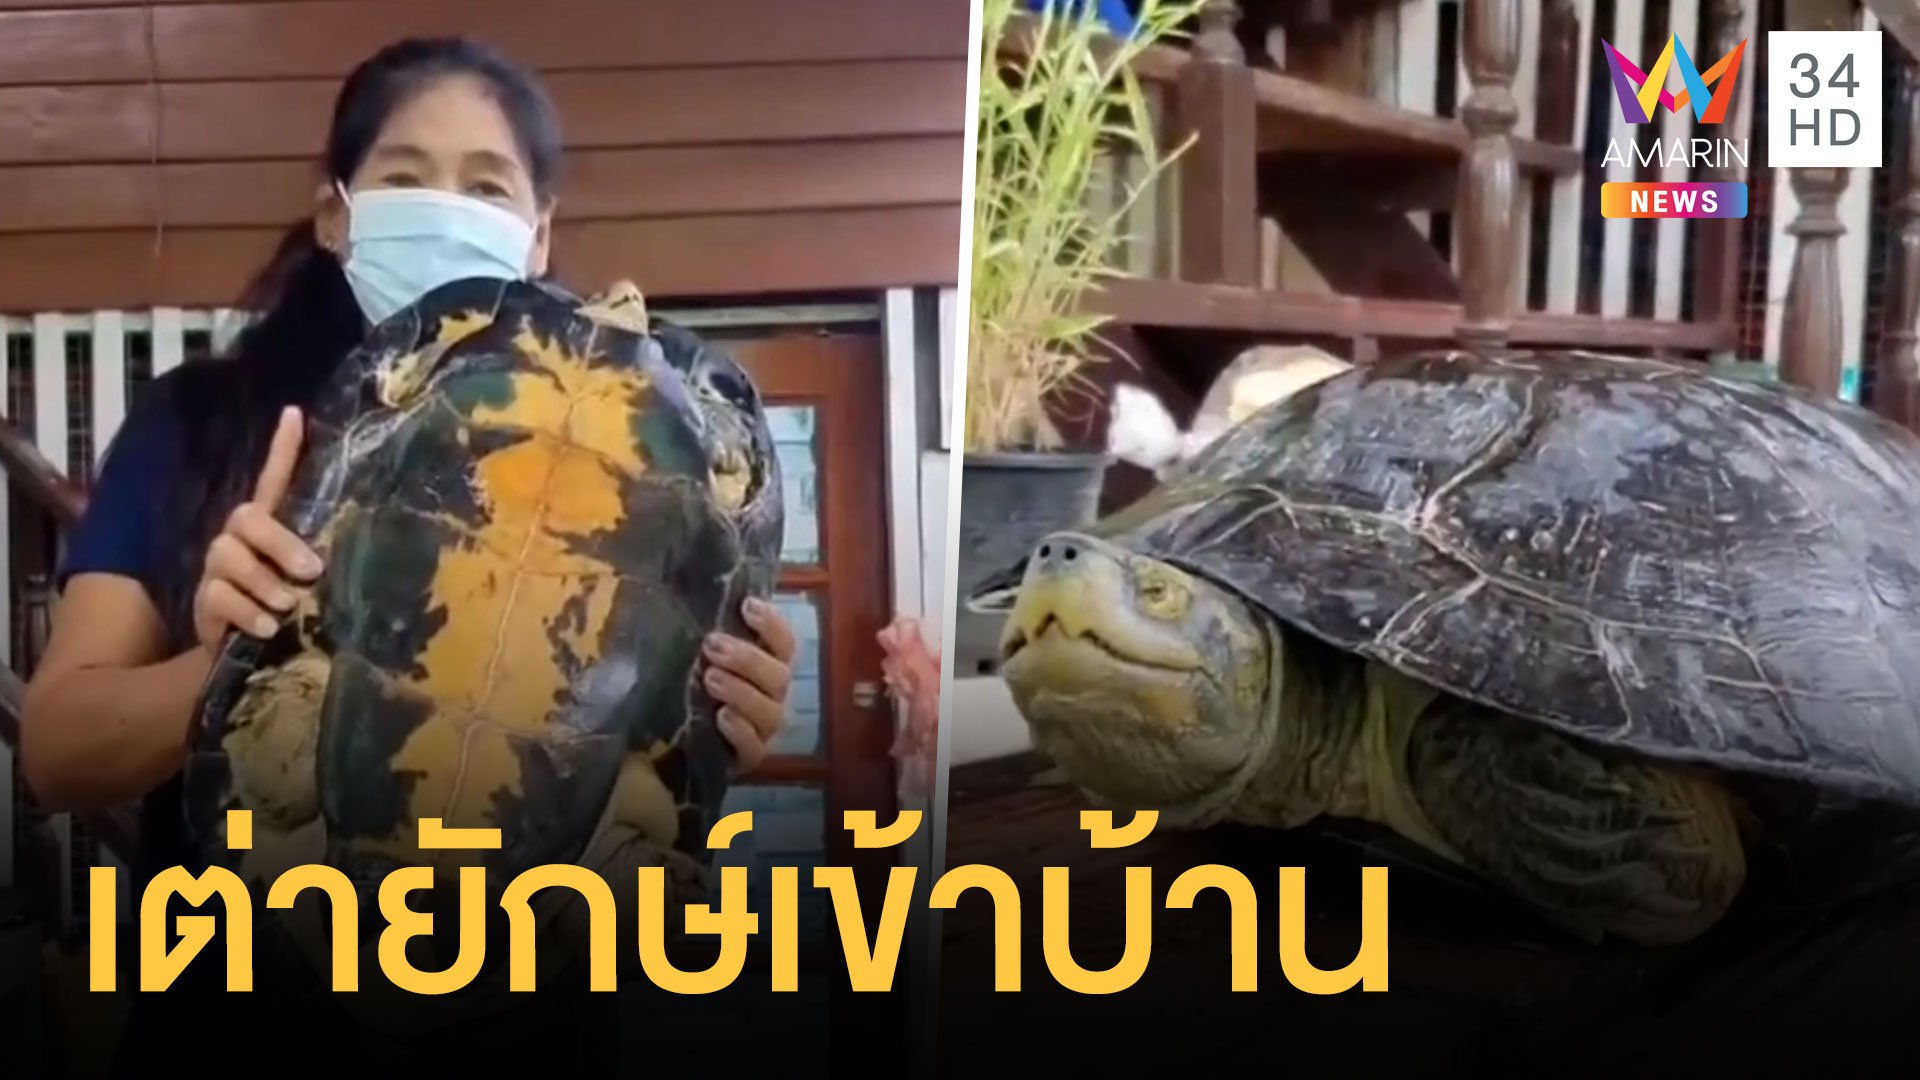 น้ำท่วมเต่ายักษ์ งู ตะขาบ ตัวเงินตัวทอง เข้าบ้าน | ข่าวอรุณอมรินทร์ | 7 ต.ค. 64 | AMARIN TVHD34